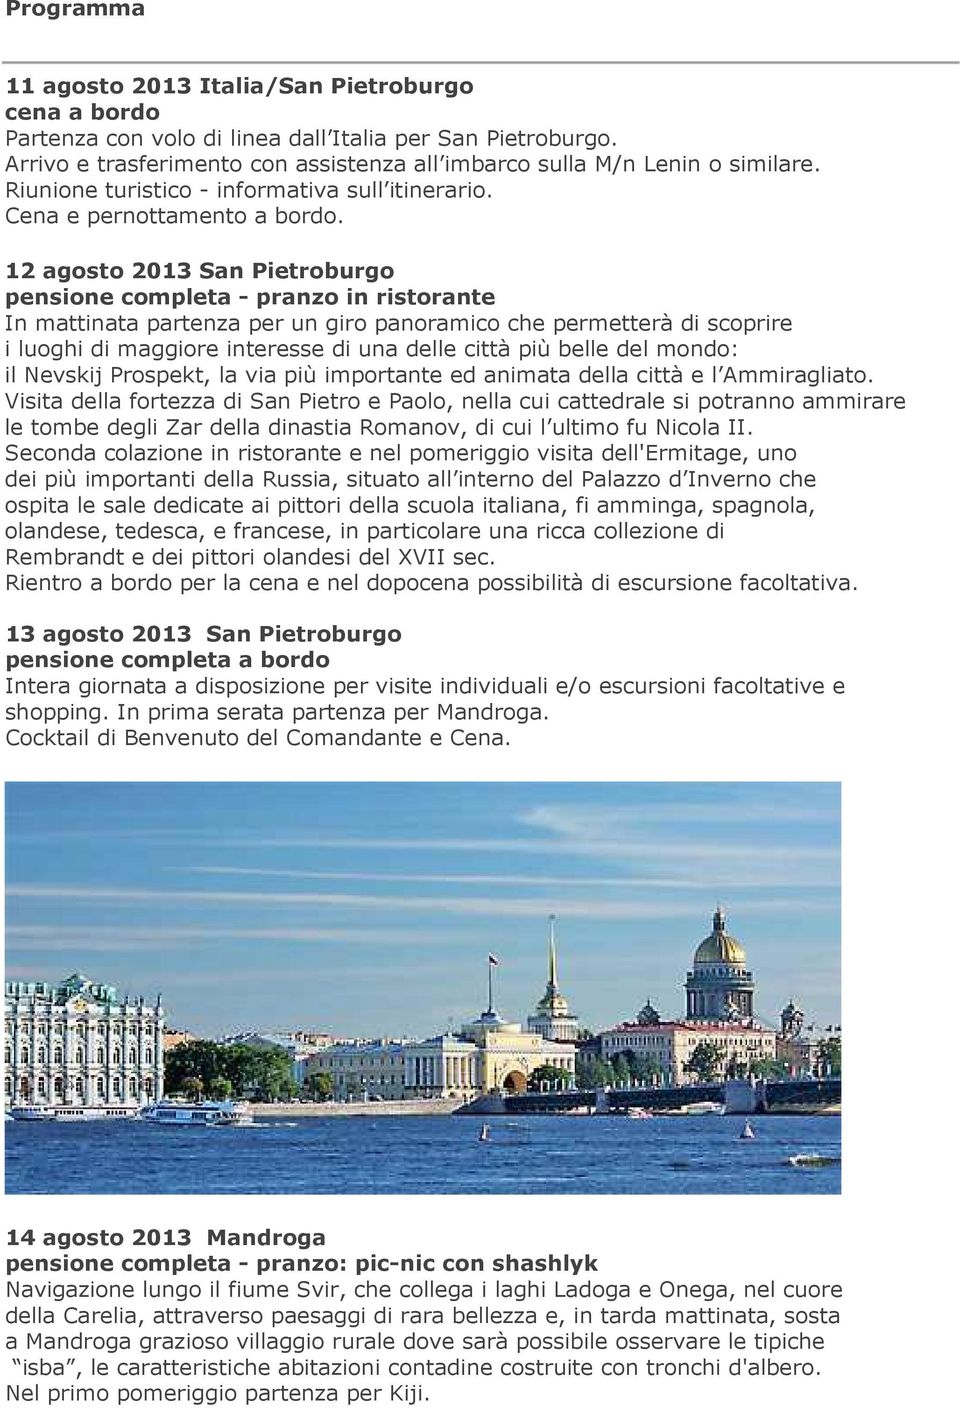 12 agosto 2013 San Pietroburgo pensione completa - pranzo in ristorante In mattinata partenza per un giro panoramico che permetterà di scoprire i luoghi di maggiore interesse di una delle città più